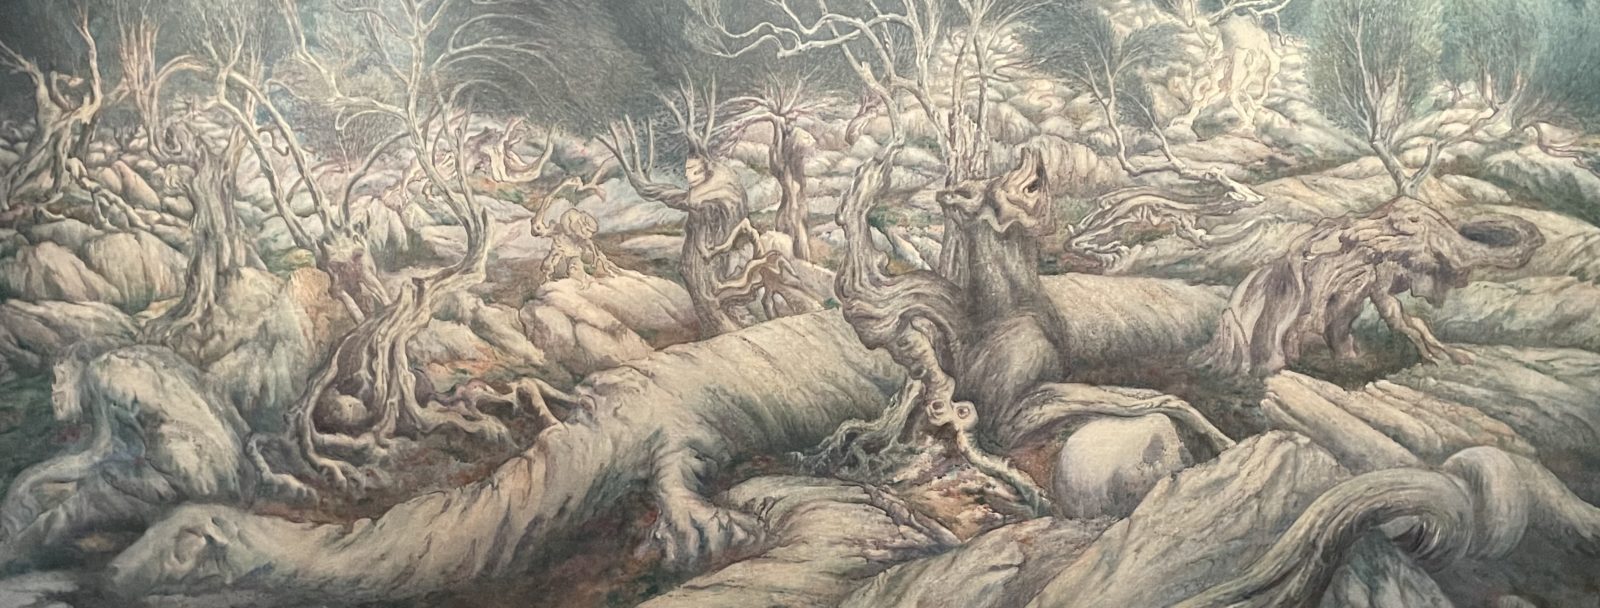 La Forêt mystérieuse, 1900 - William Degouve de Nuncques 